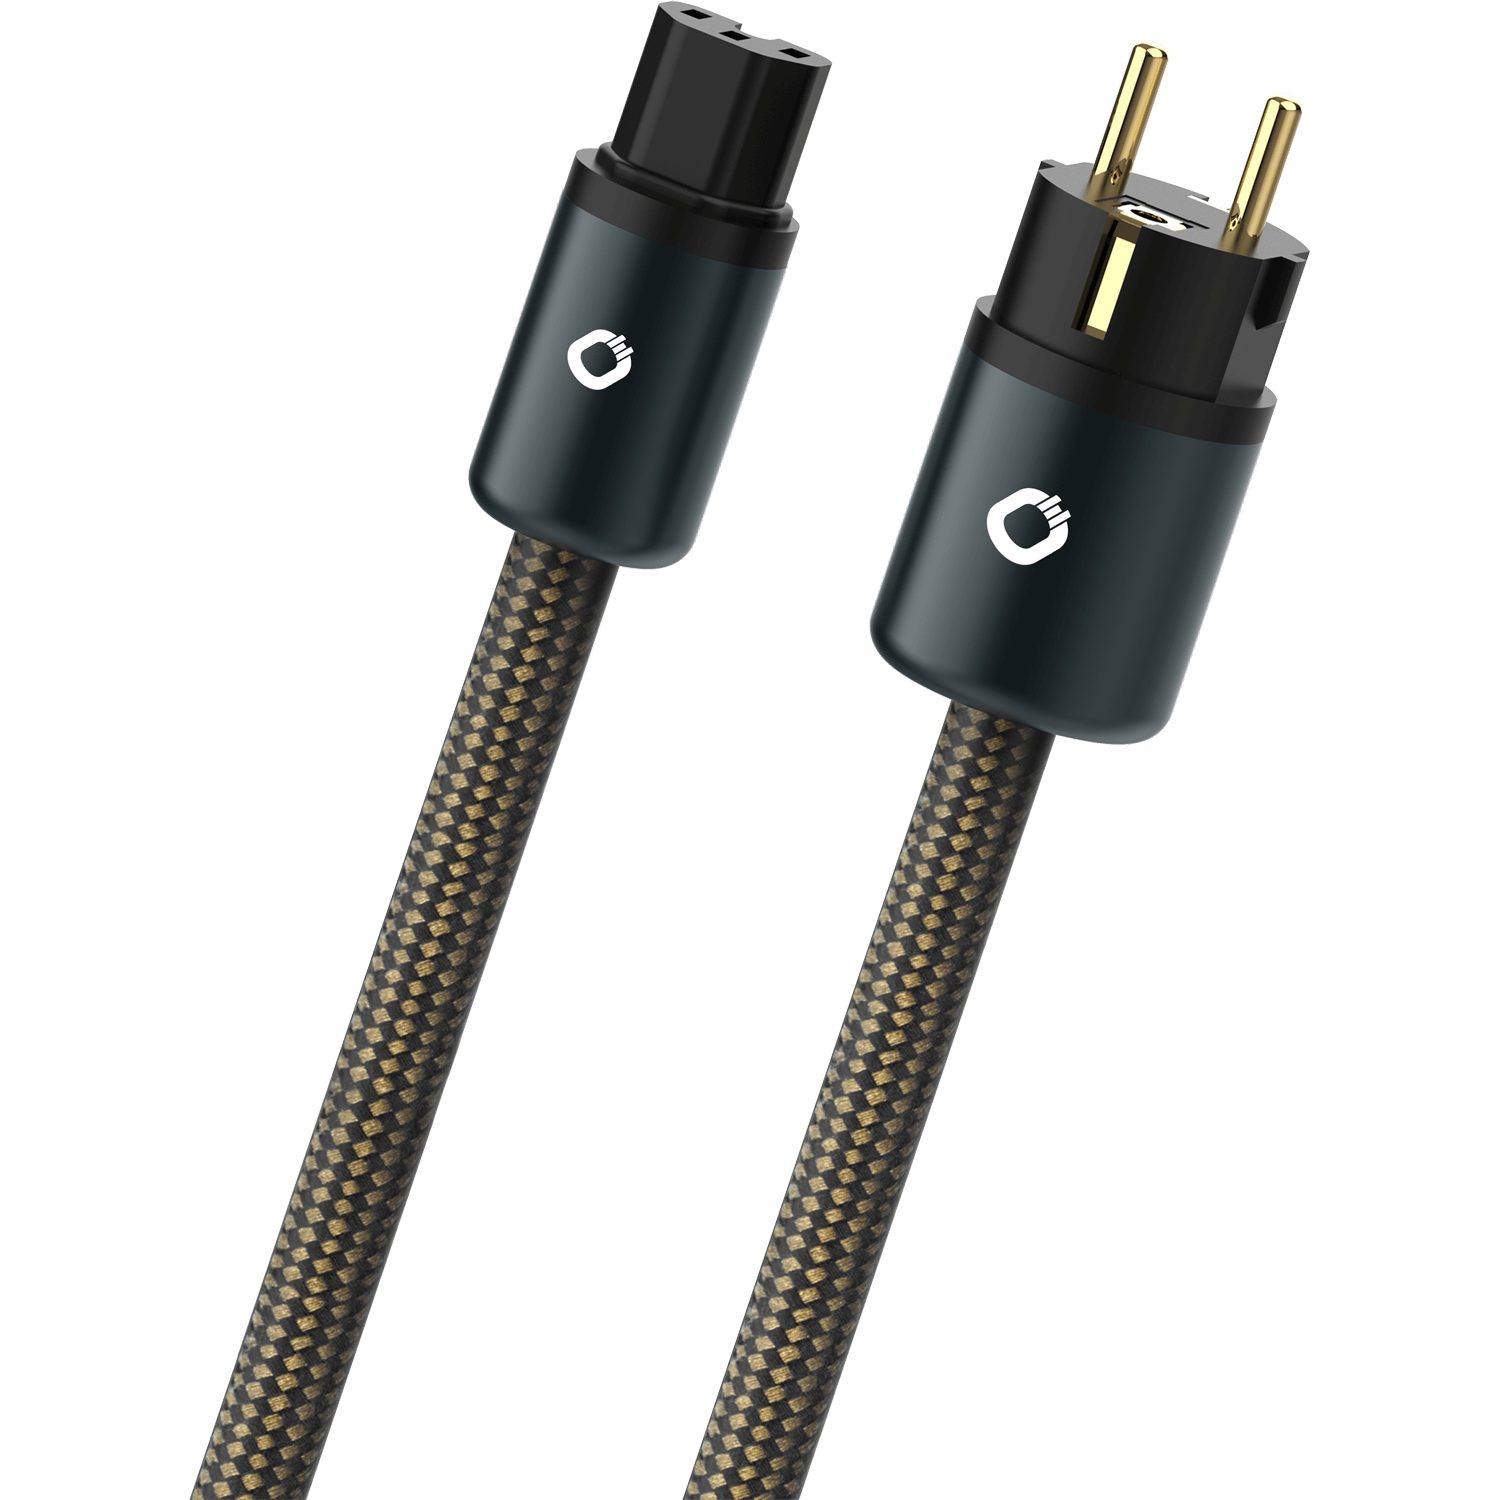 Oehlbach Powercord+ High End Stromanschlusskabel mit C15 und CEE7/7 Stecker Netzkabel, Schuko Stecker CEE7/7, C15 Buchse (75 cm)